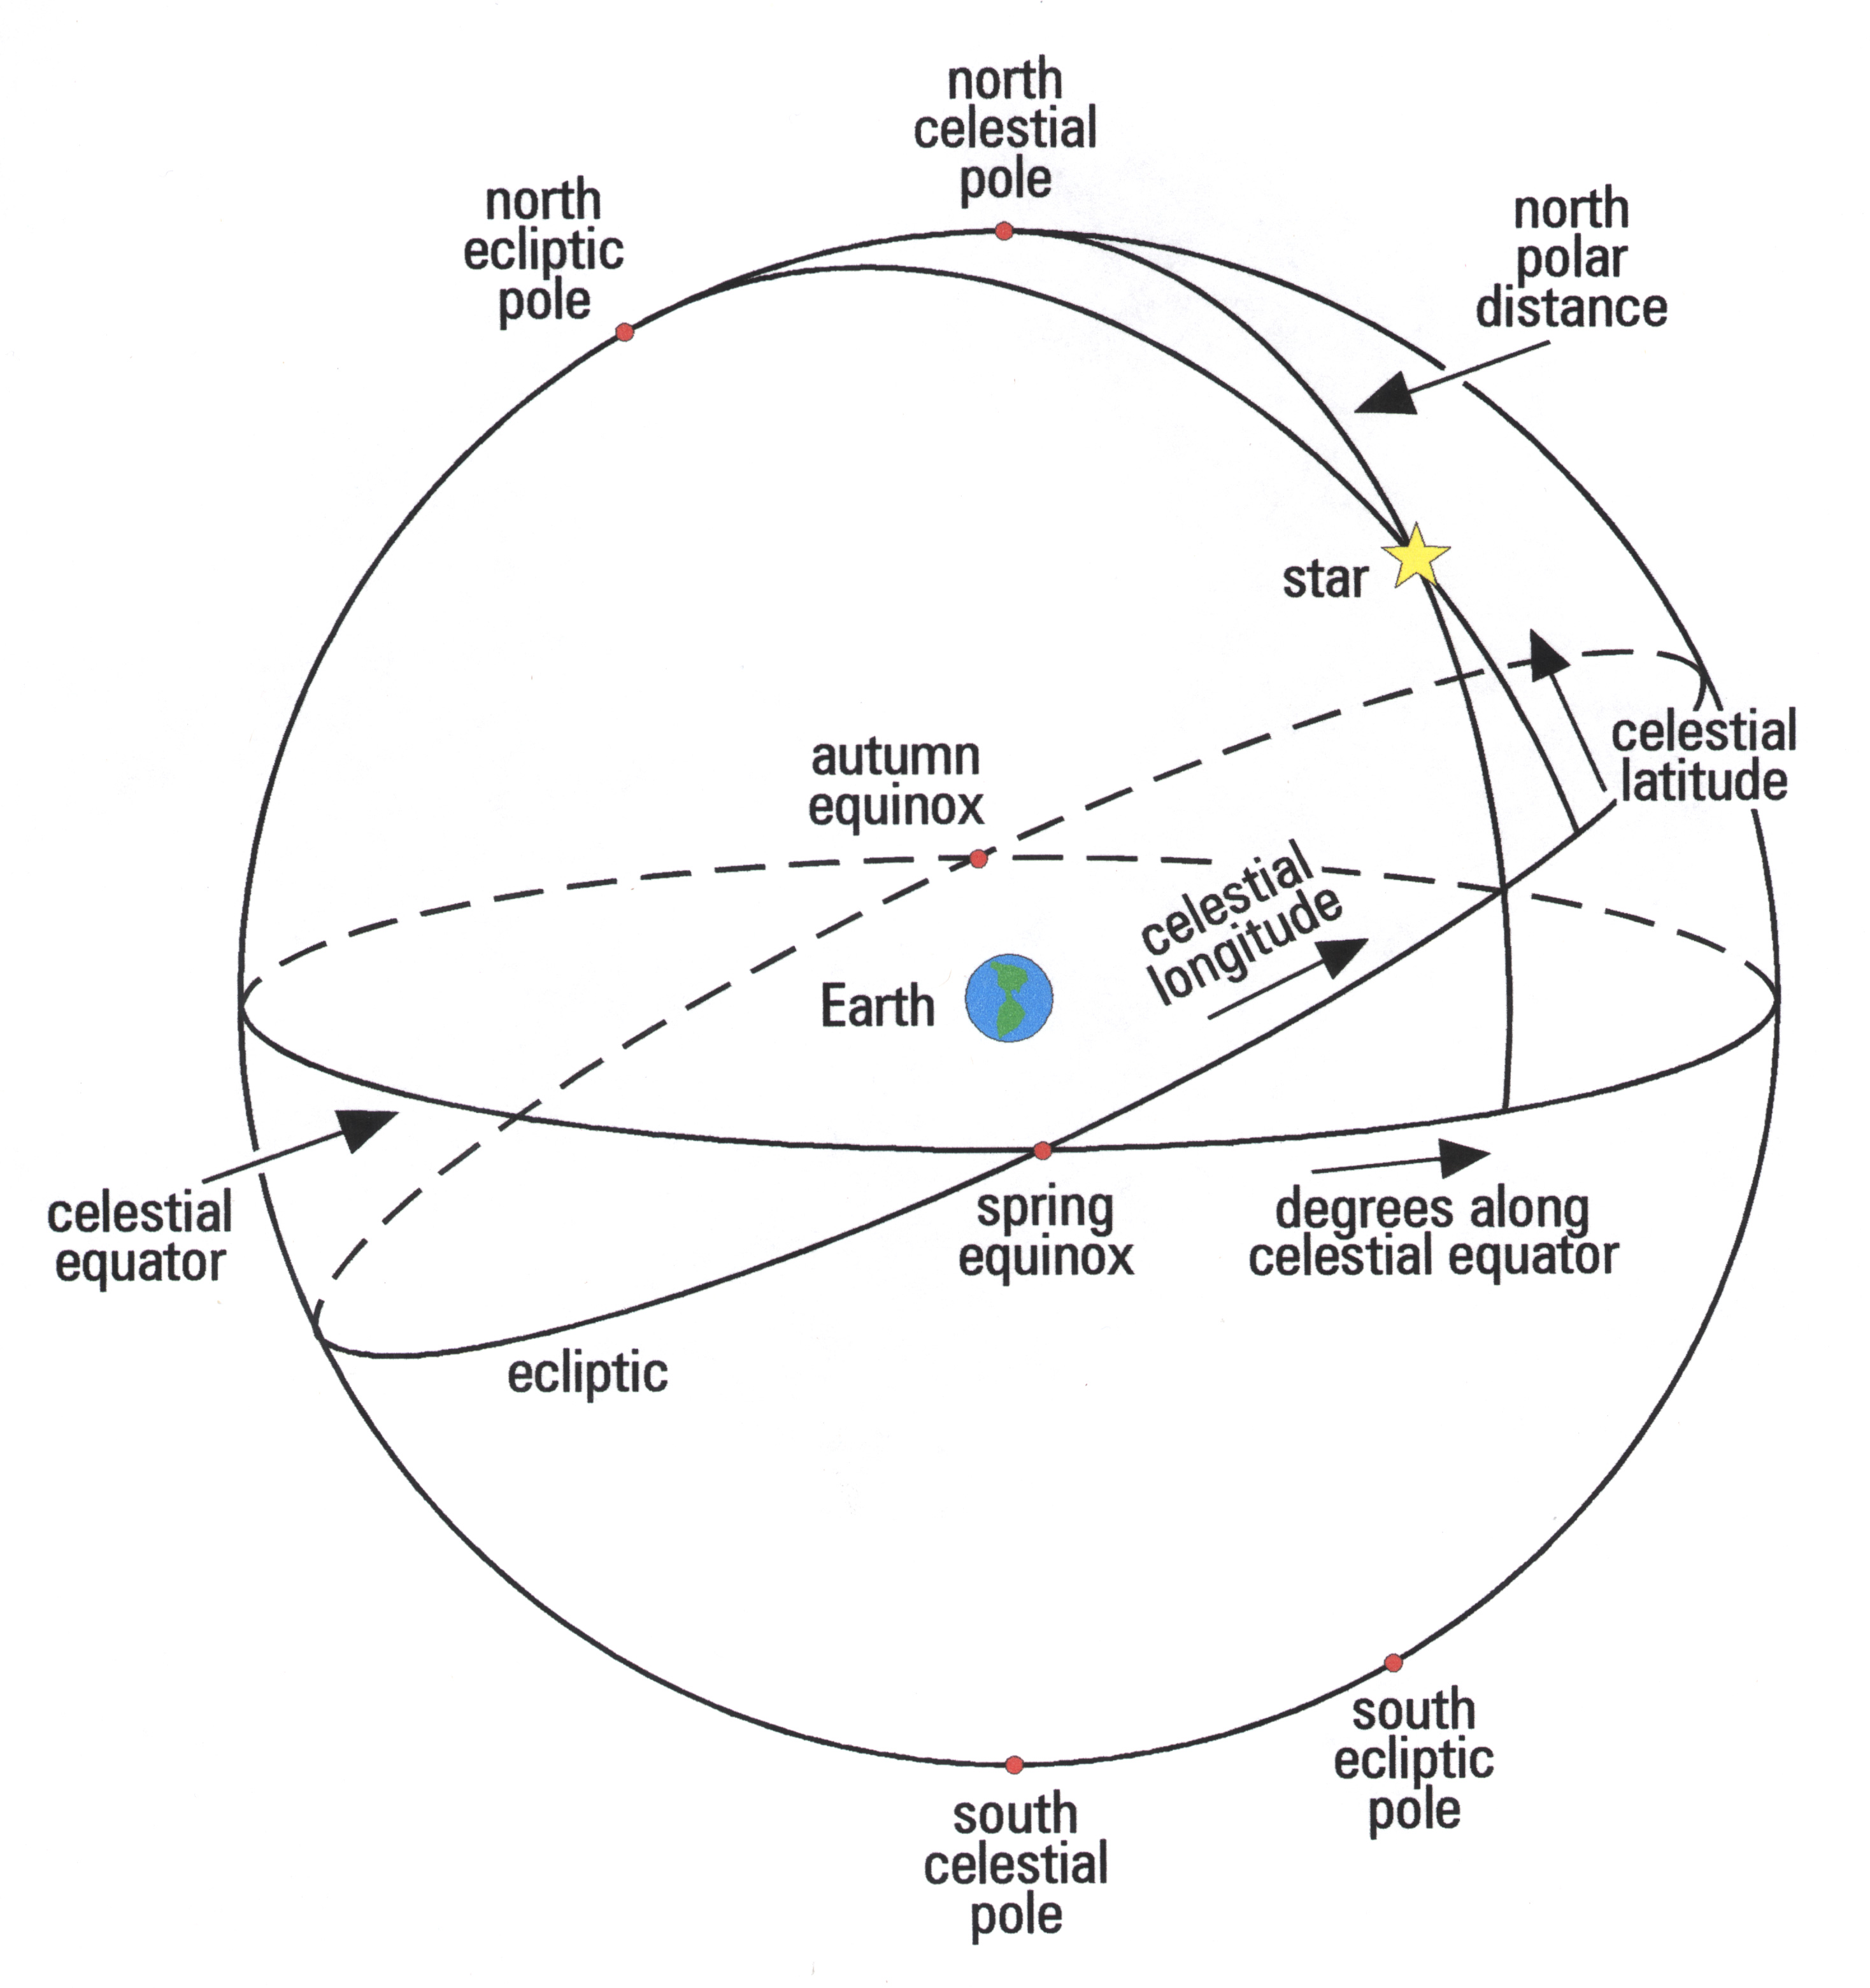 Starry Messenger: The Celestial Sphere